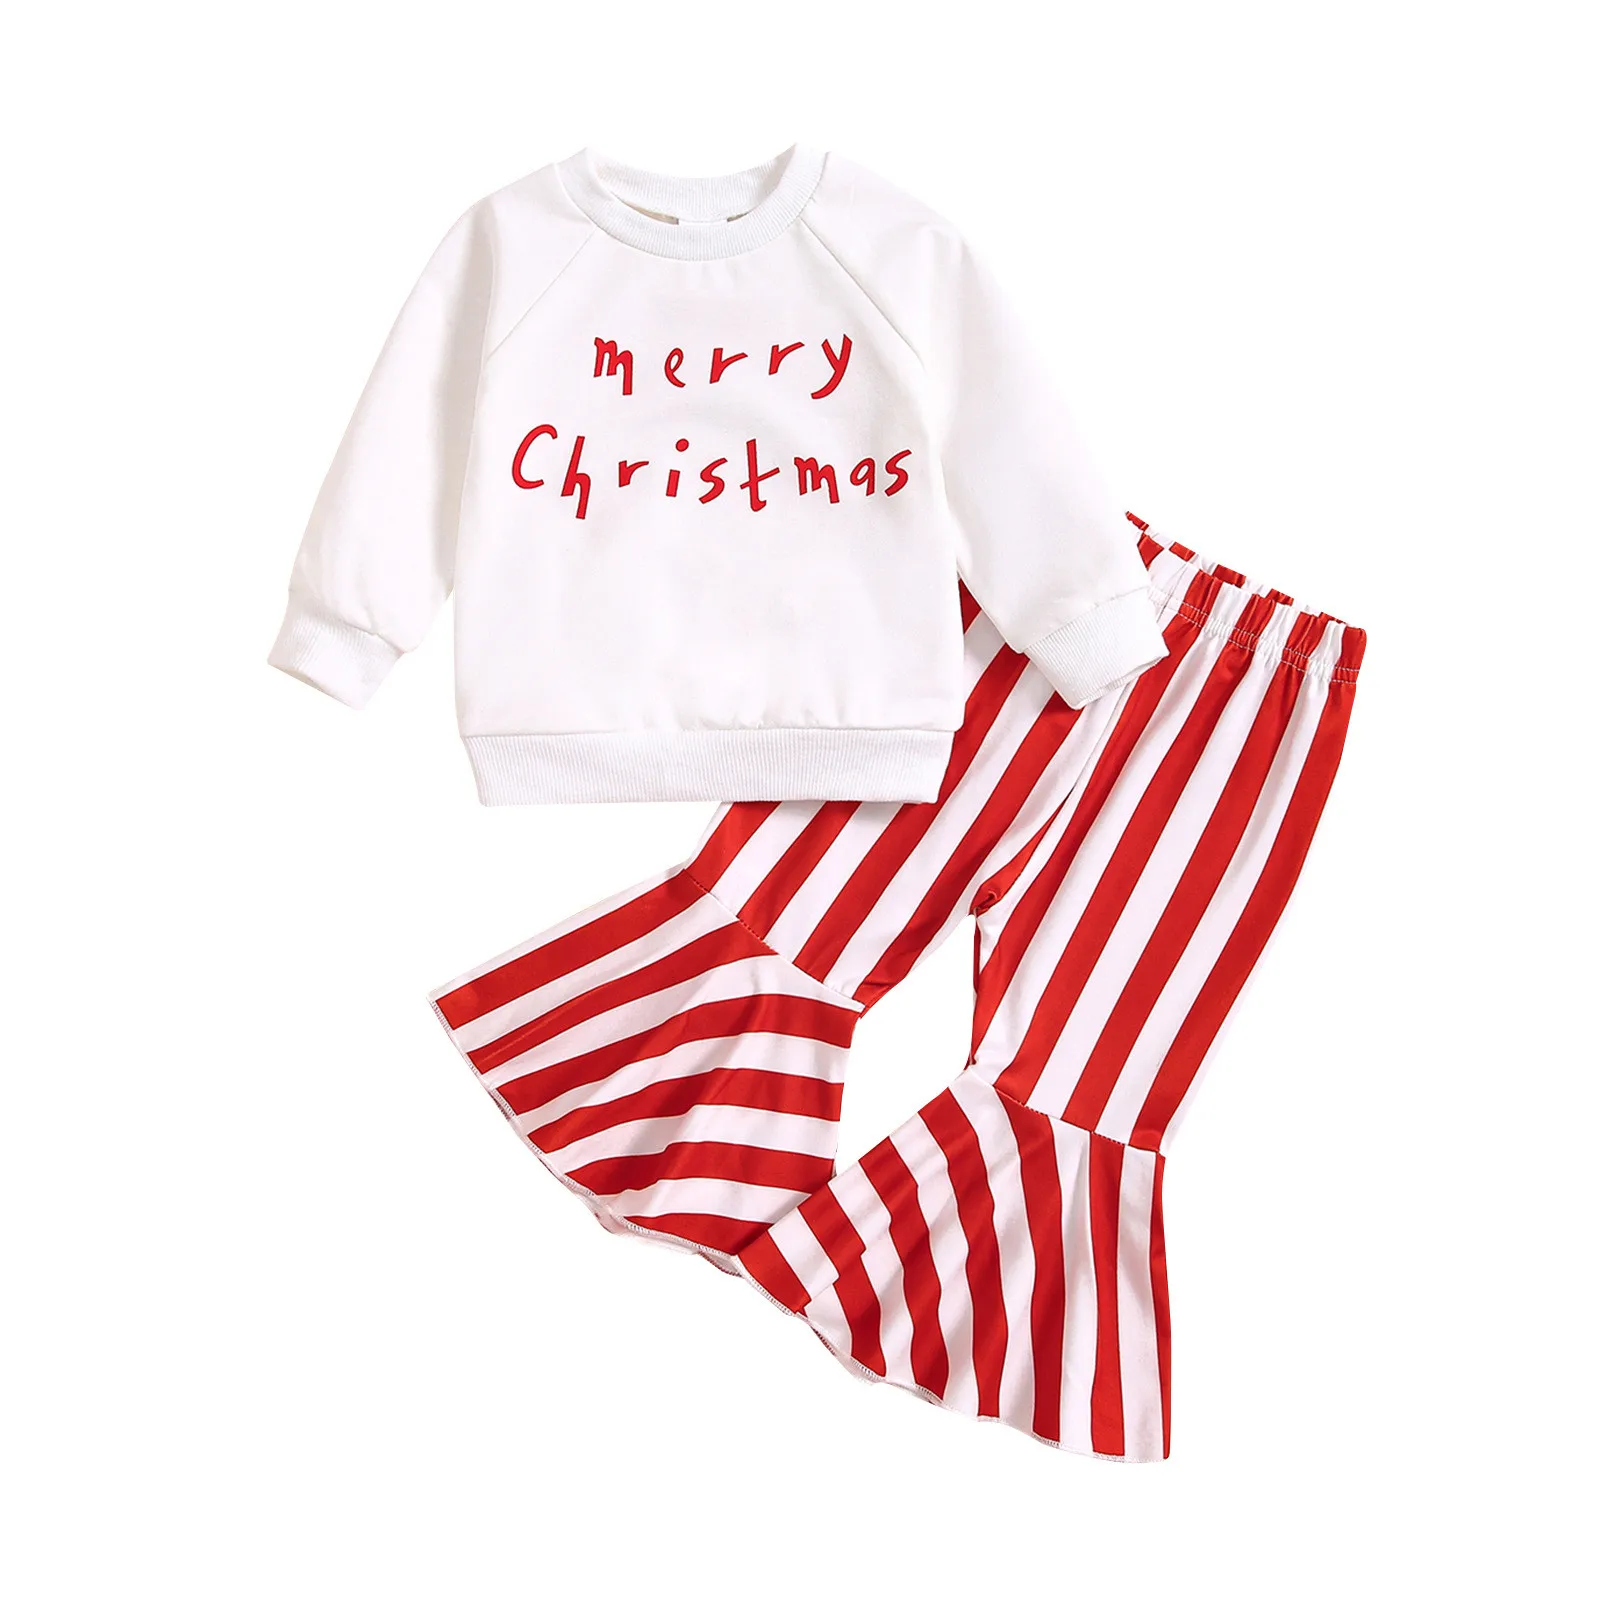 Merry Christmas Baskı Kıyafetler Toddler 2 ADET Kızlar Uzun Kollu üstler ve pantolonlar İçin Giysi Set Çocuk Çocuk Giysileri 아동 상하복 세트 Görüntü 1